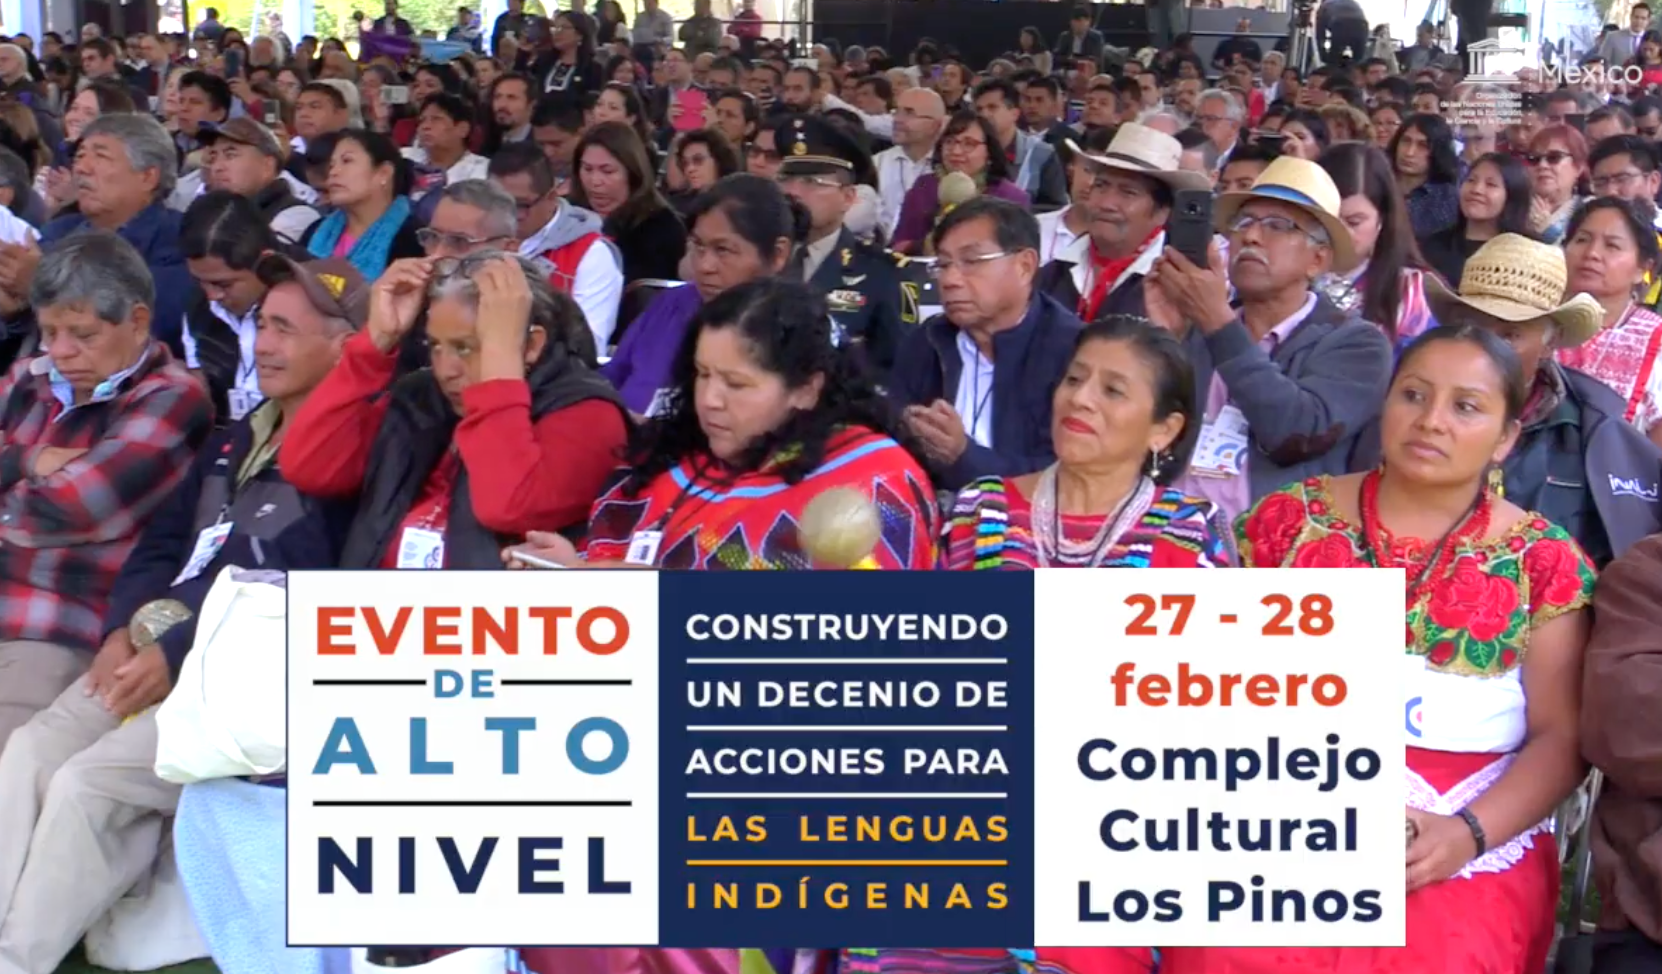 High-Level Event “Making A Decade Of Action For Indigenous Languages” / Evento De Alto Nivel “Construyendo Un Decenio De Acciones Para Las Lenguas Indígenas”